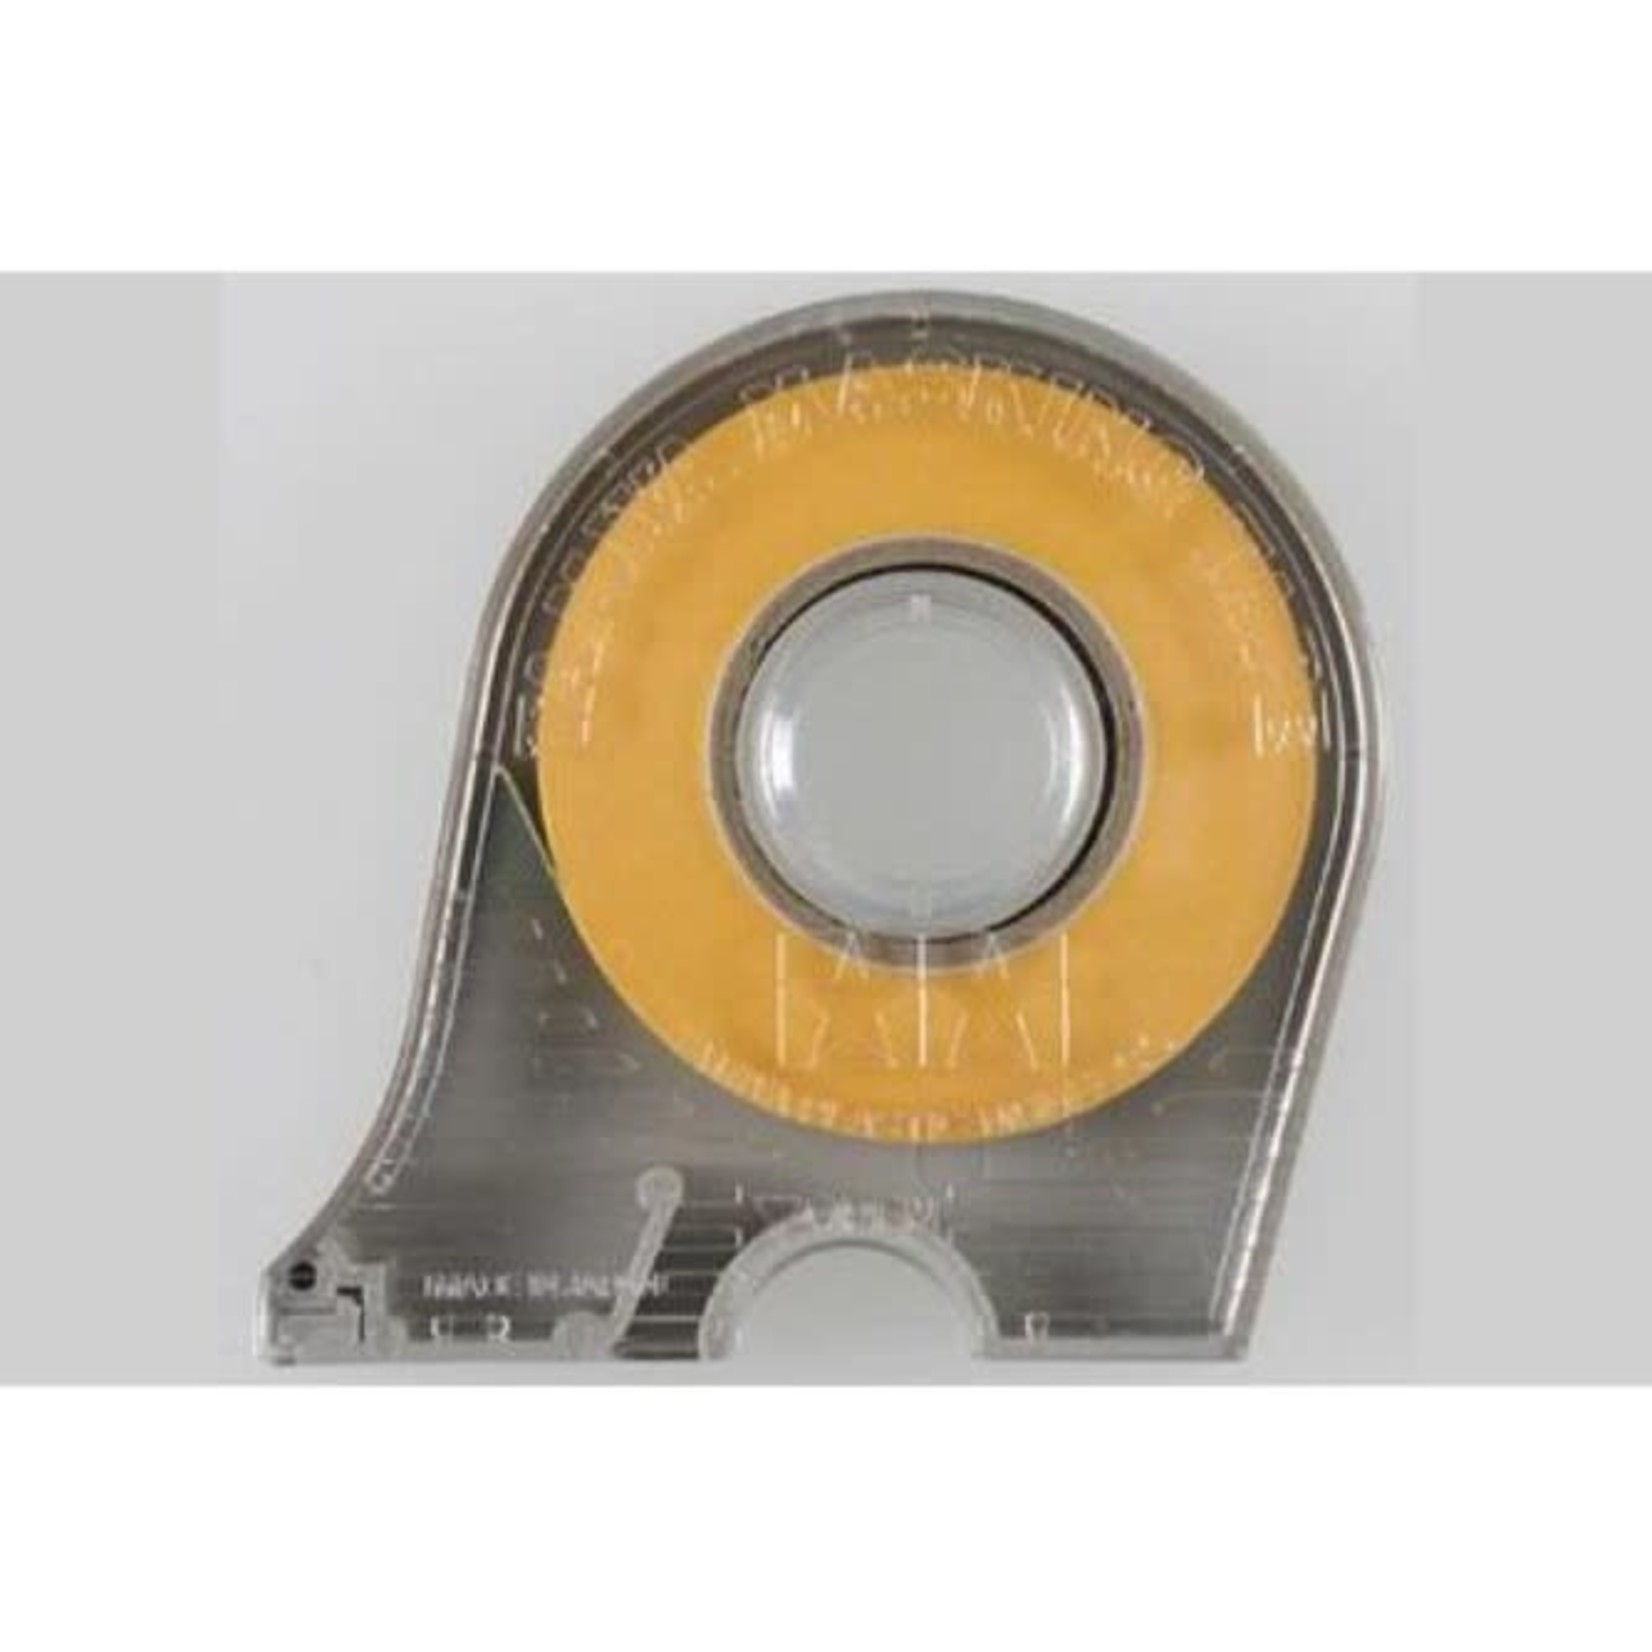 Tamiya Masking Tape w/ Dispenser, 10mm